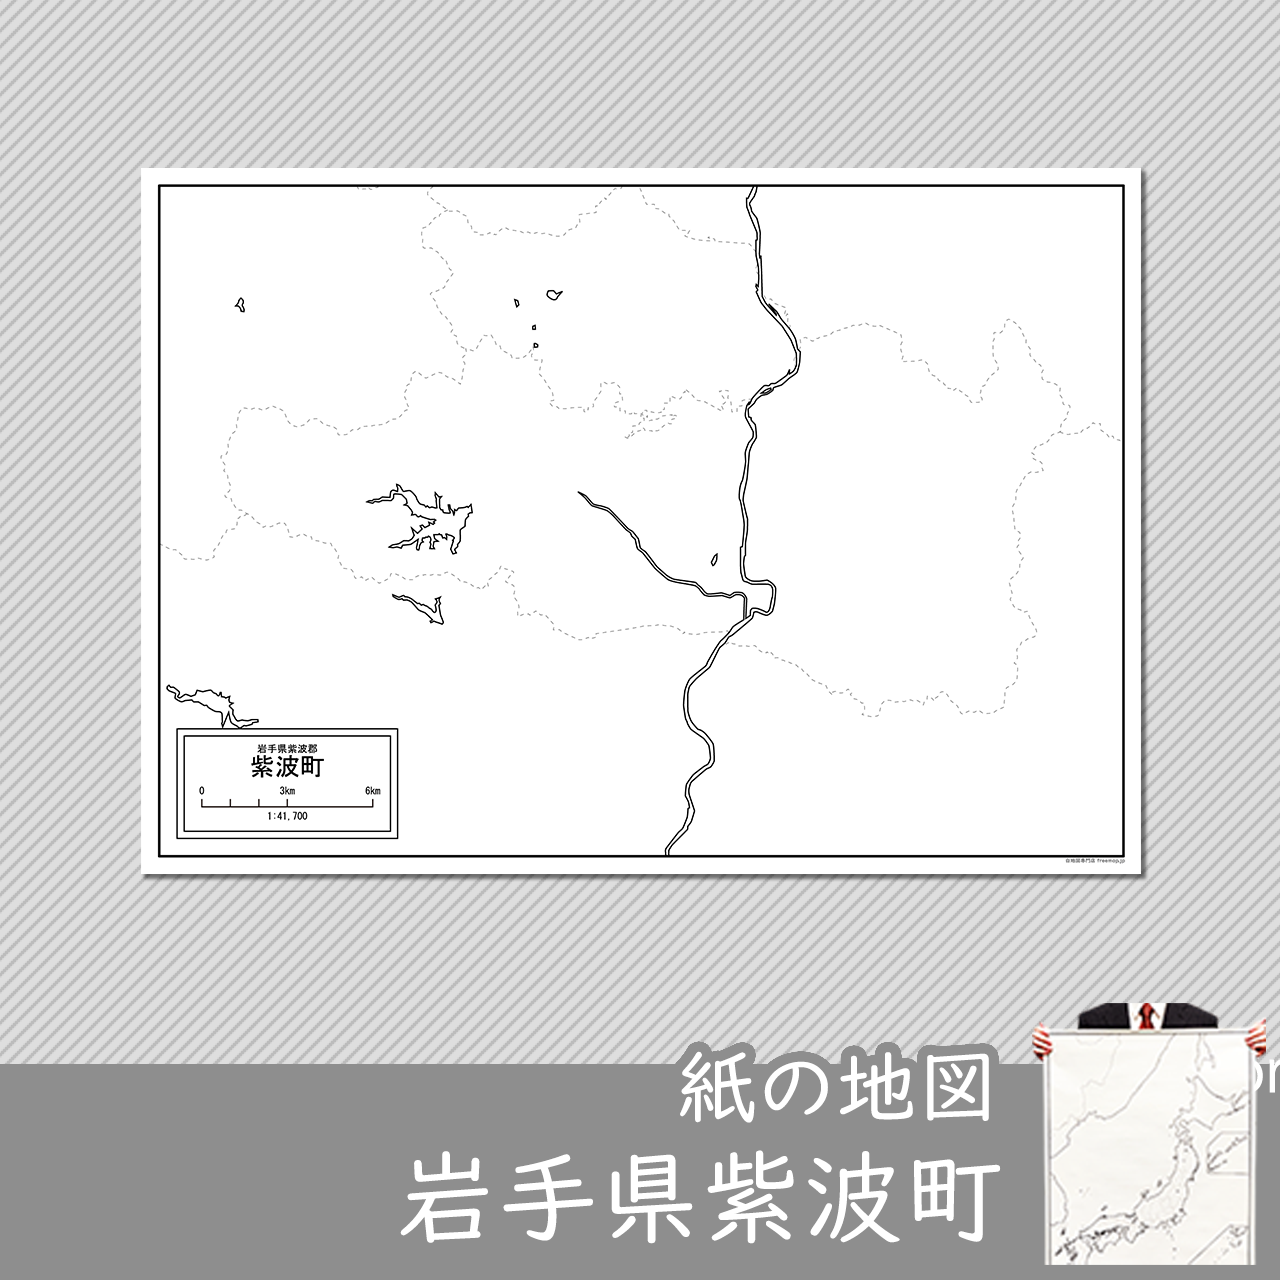 紫波町の紙の白地図